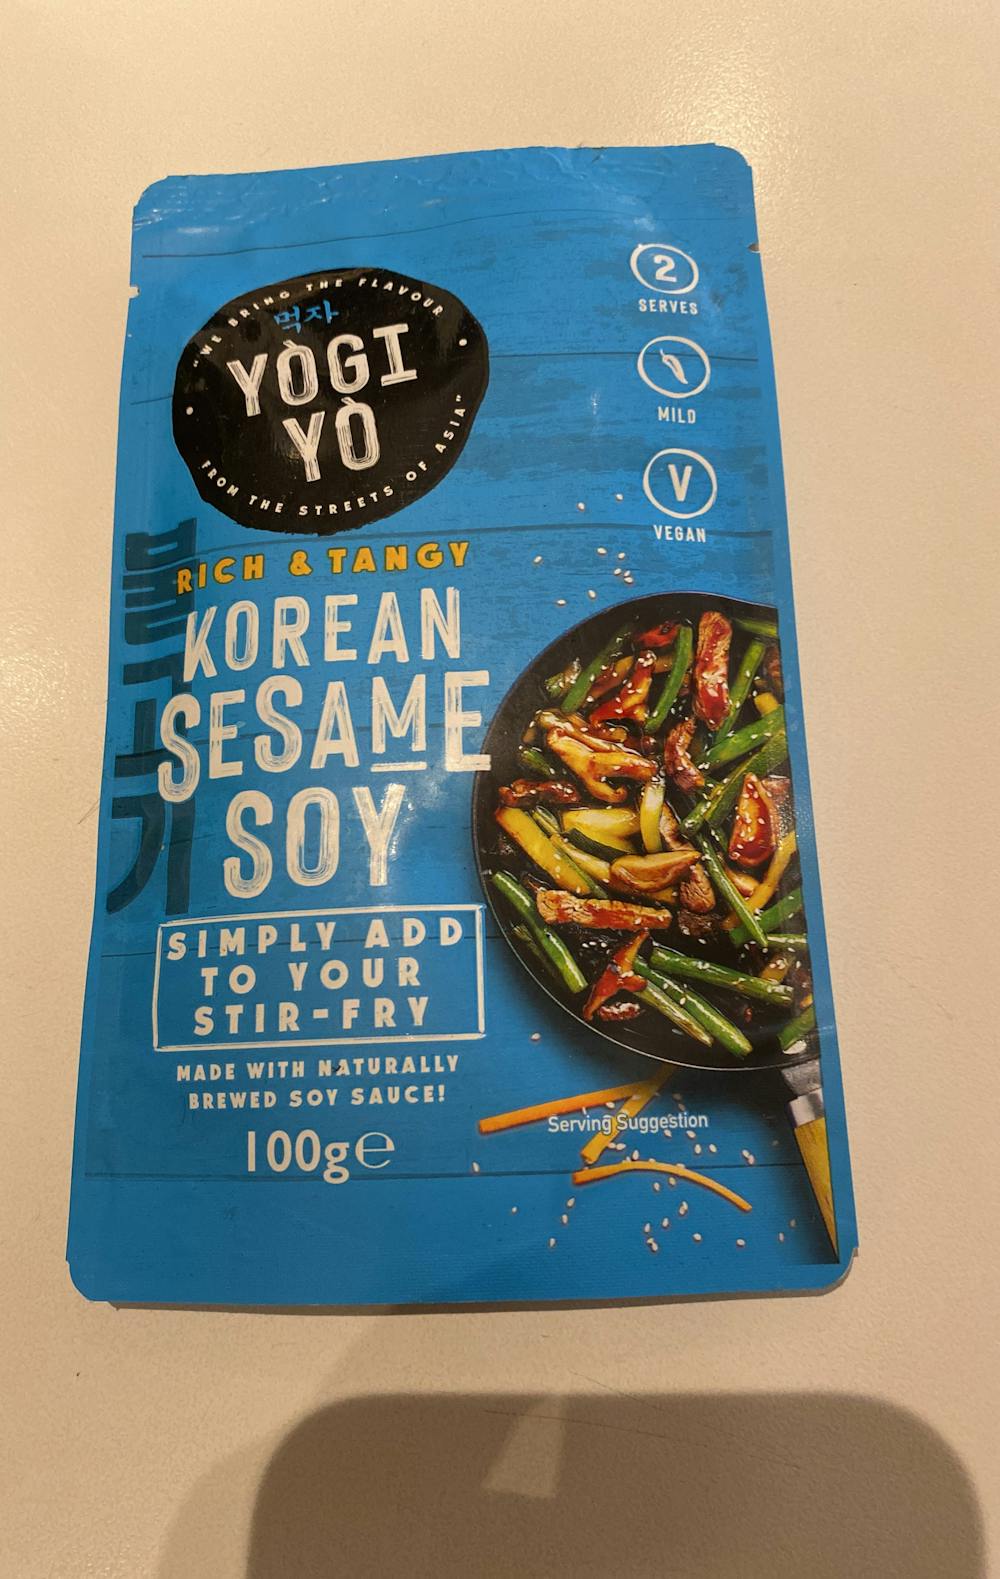 Korean sesame soy, Yogi Yo